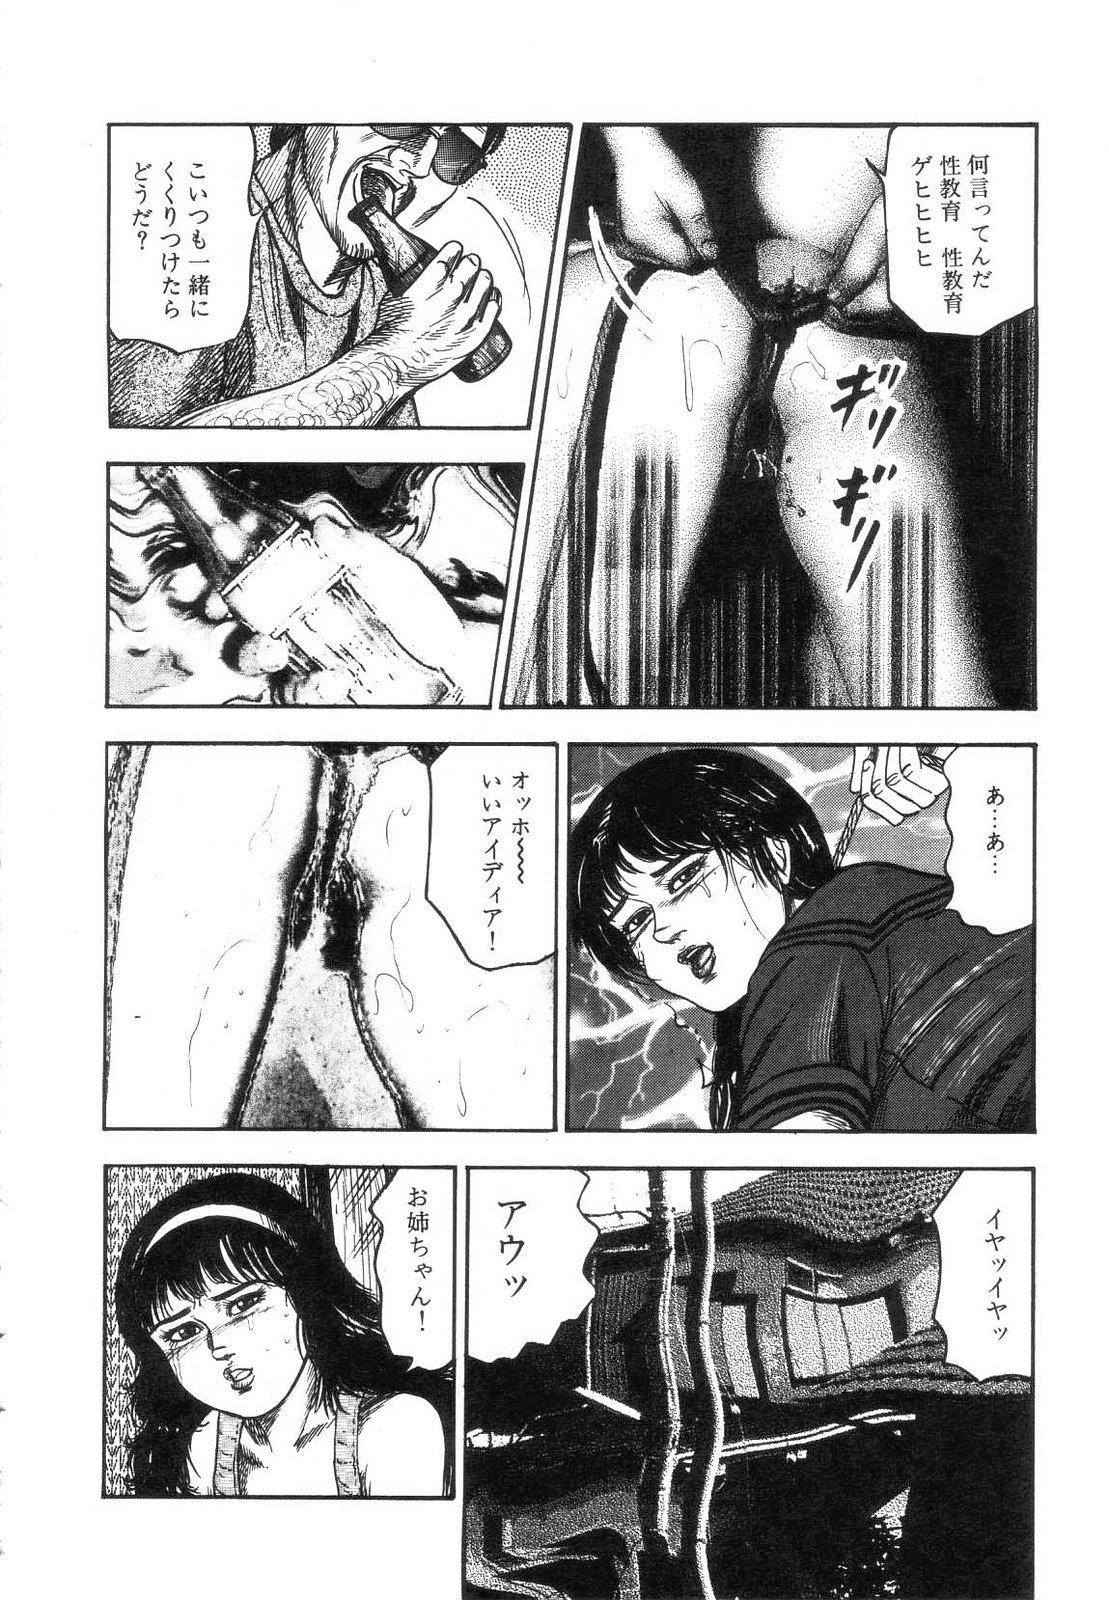 Shiro no Mokushiroku Vol. 7 - Shiiku Ningyou Erika no Shou 189